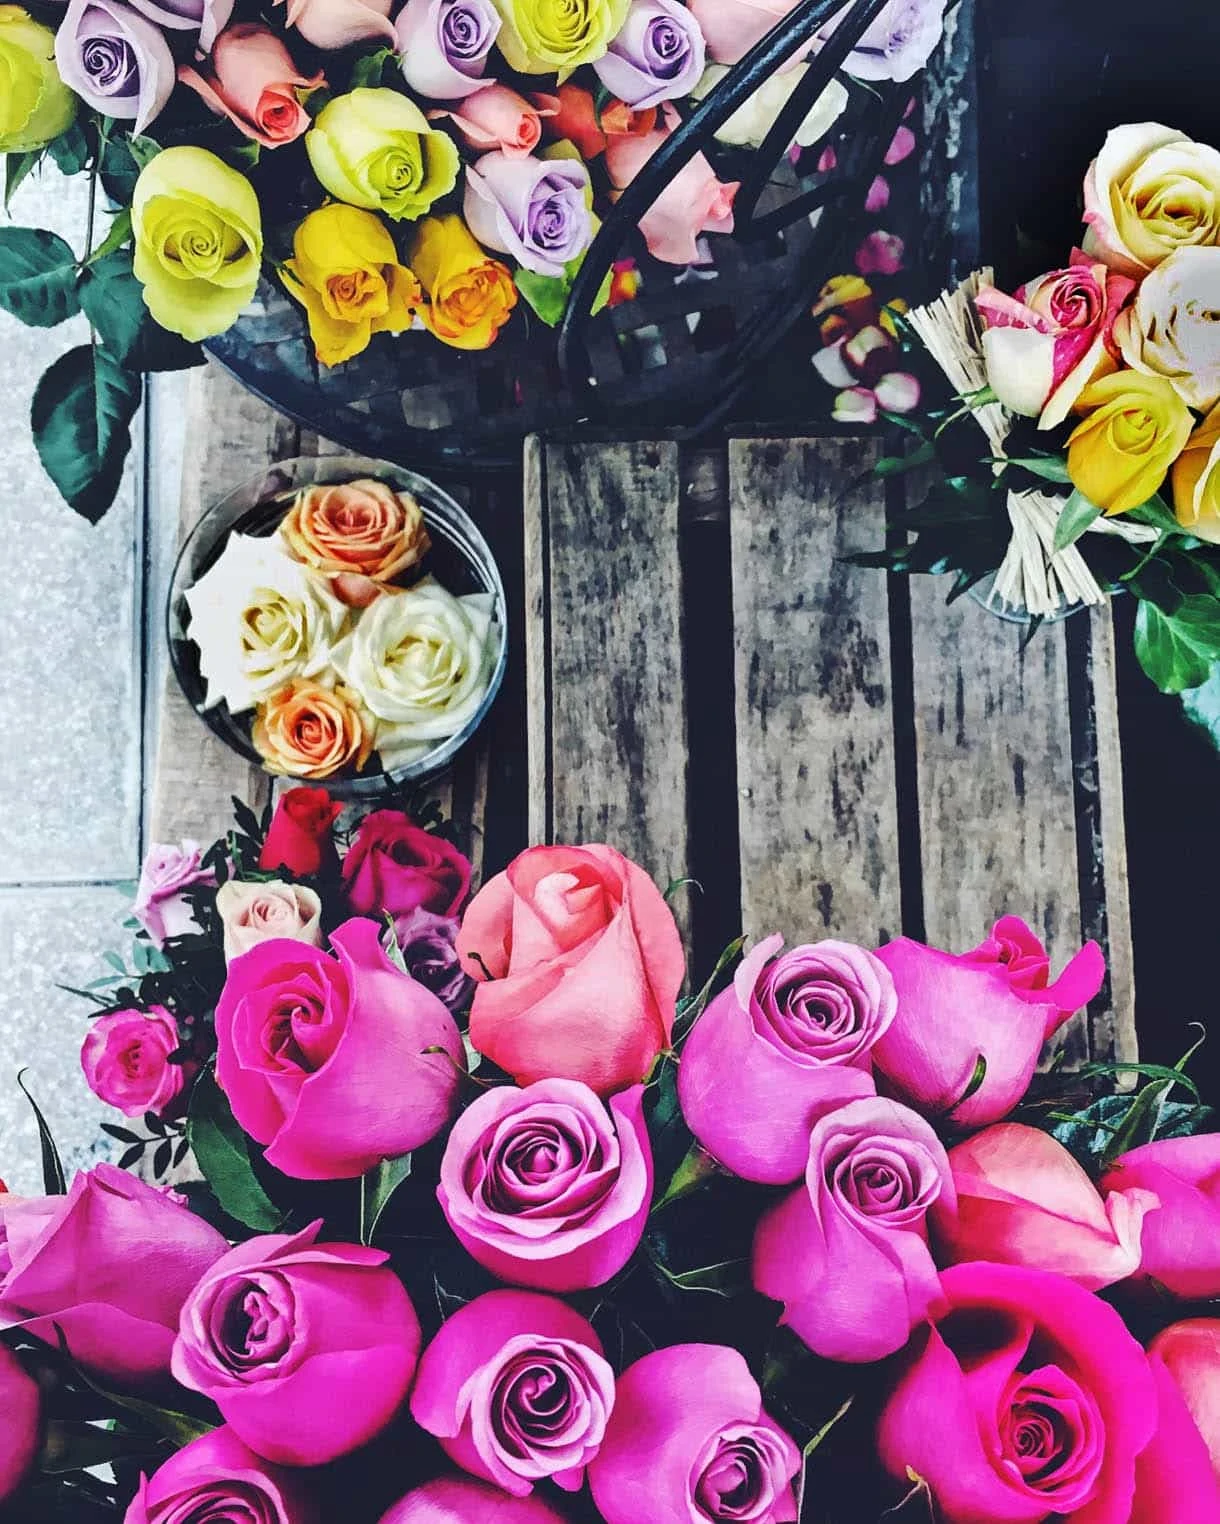 A Paris vacation without plans: Flower Market in Paris - rose bouquet